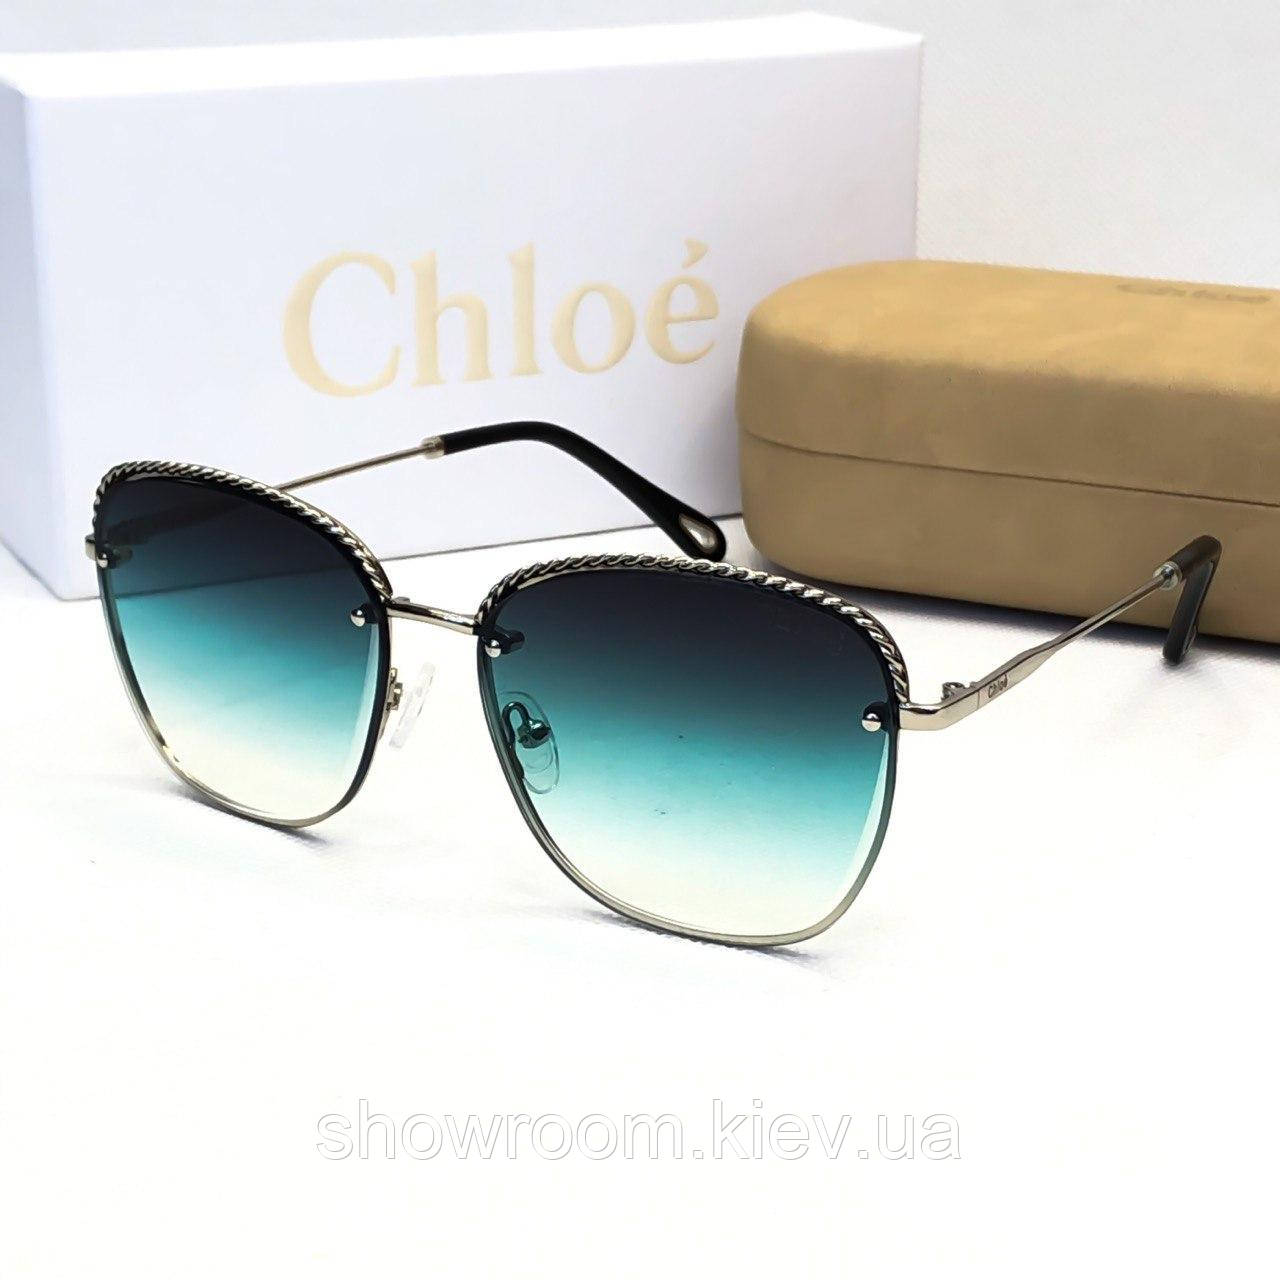 Брендові жіночі сонцезахисні окуляри Chloe (202) green